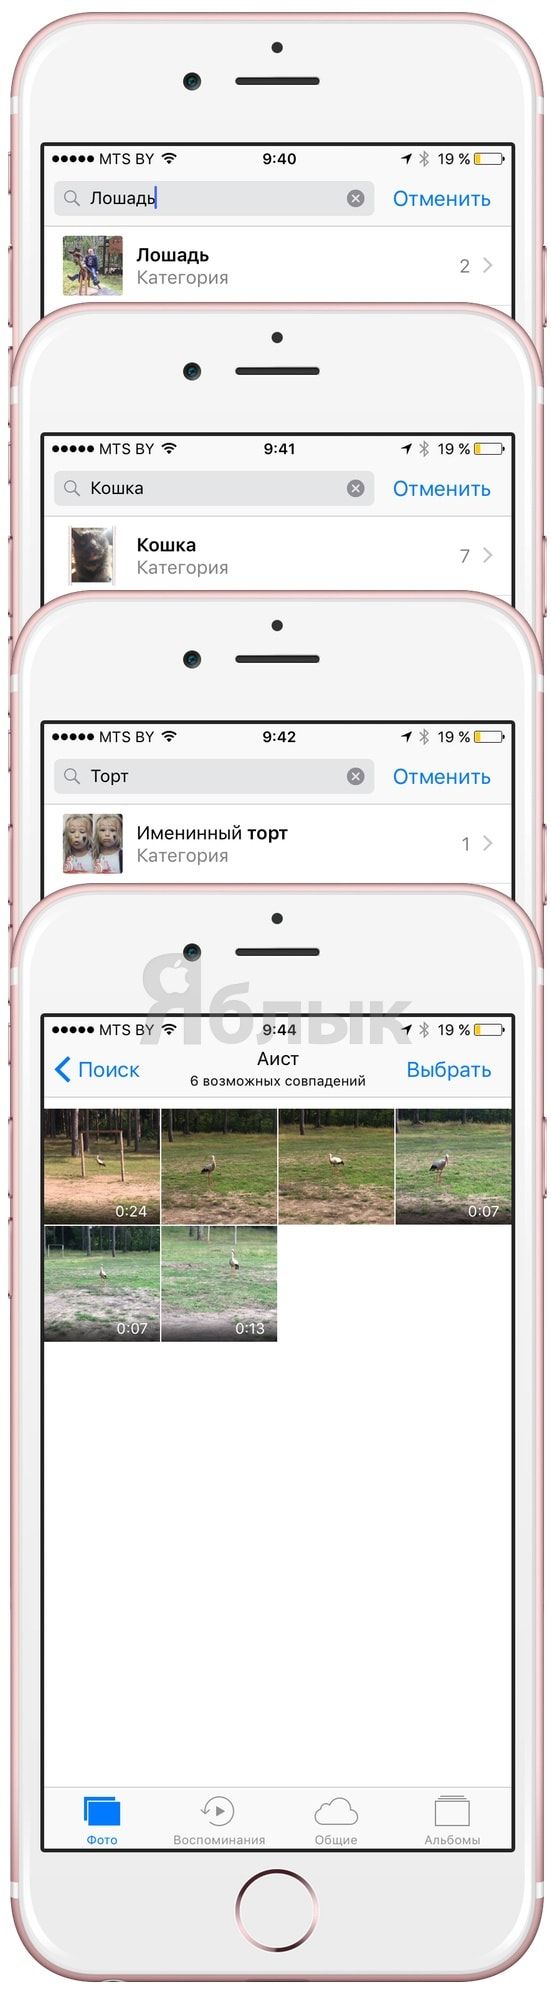 Как искать людей, места и вещи в приложении Фото в iOS 10